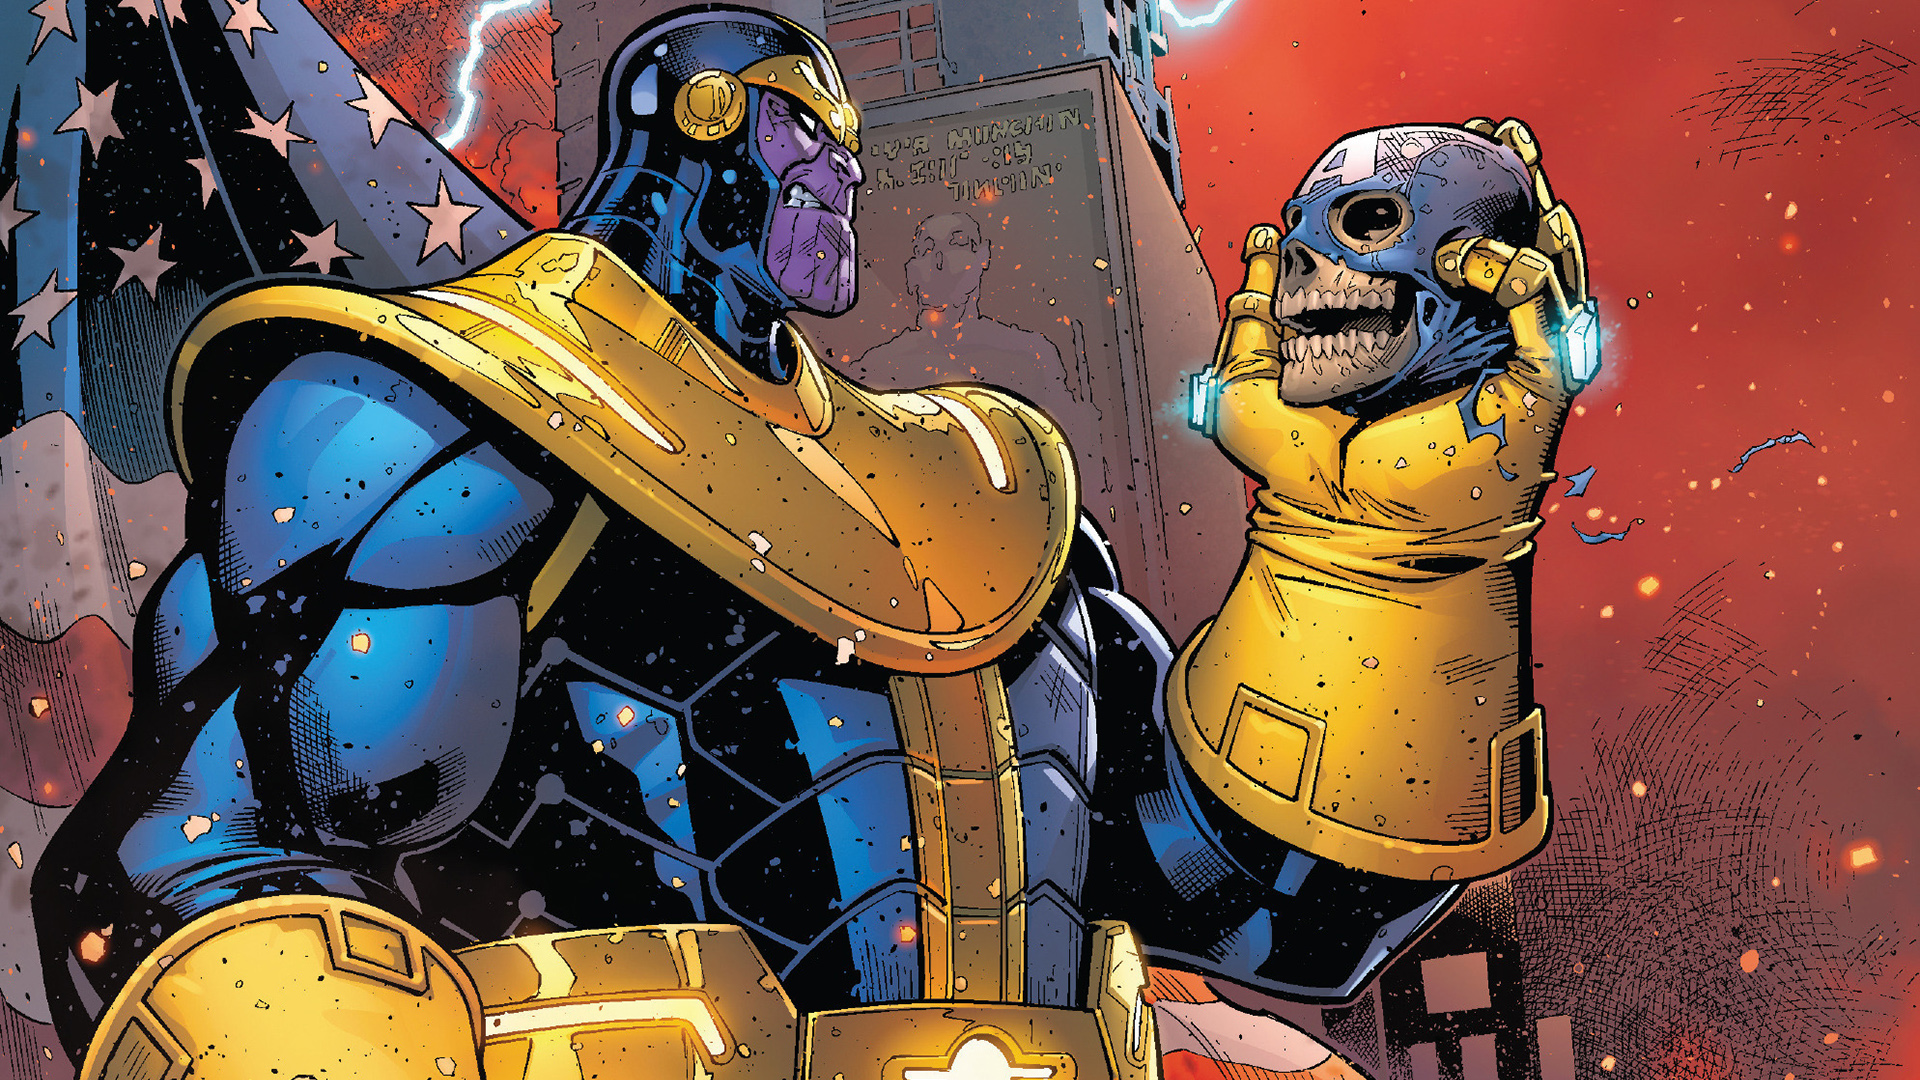 Hình ảnh về viên đá vô cực của Thanos